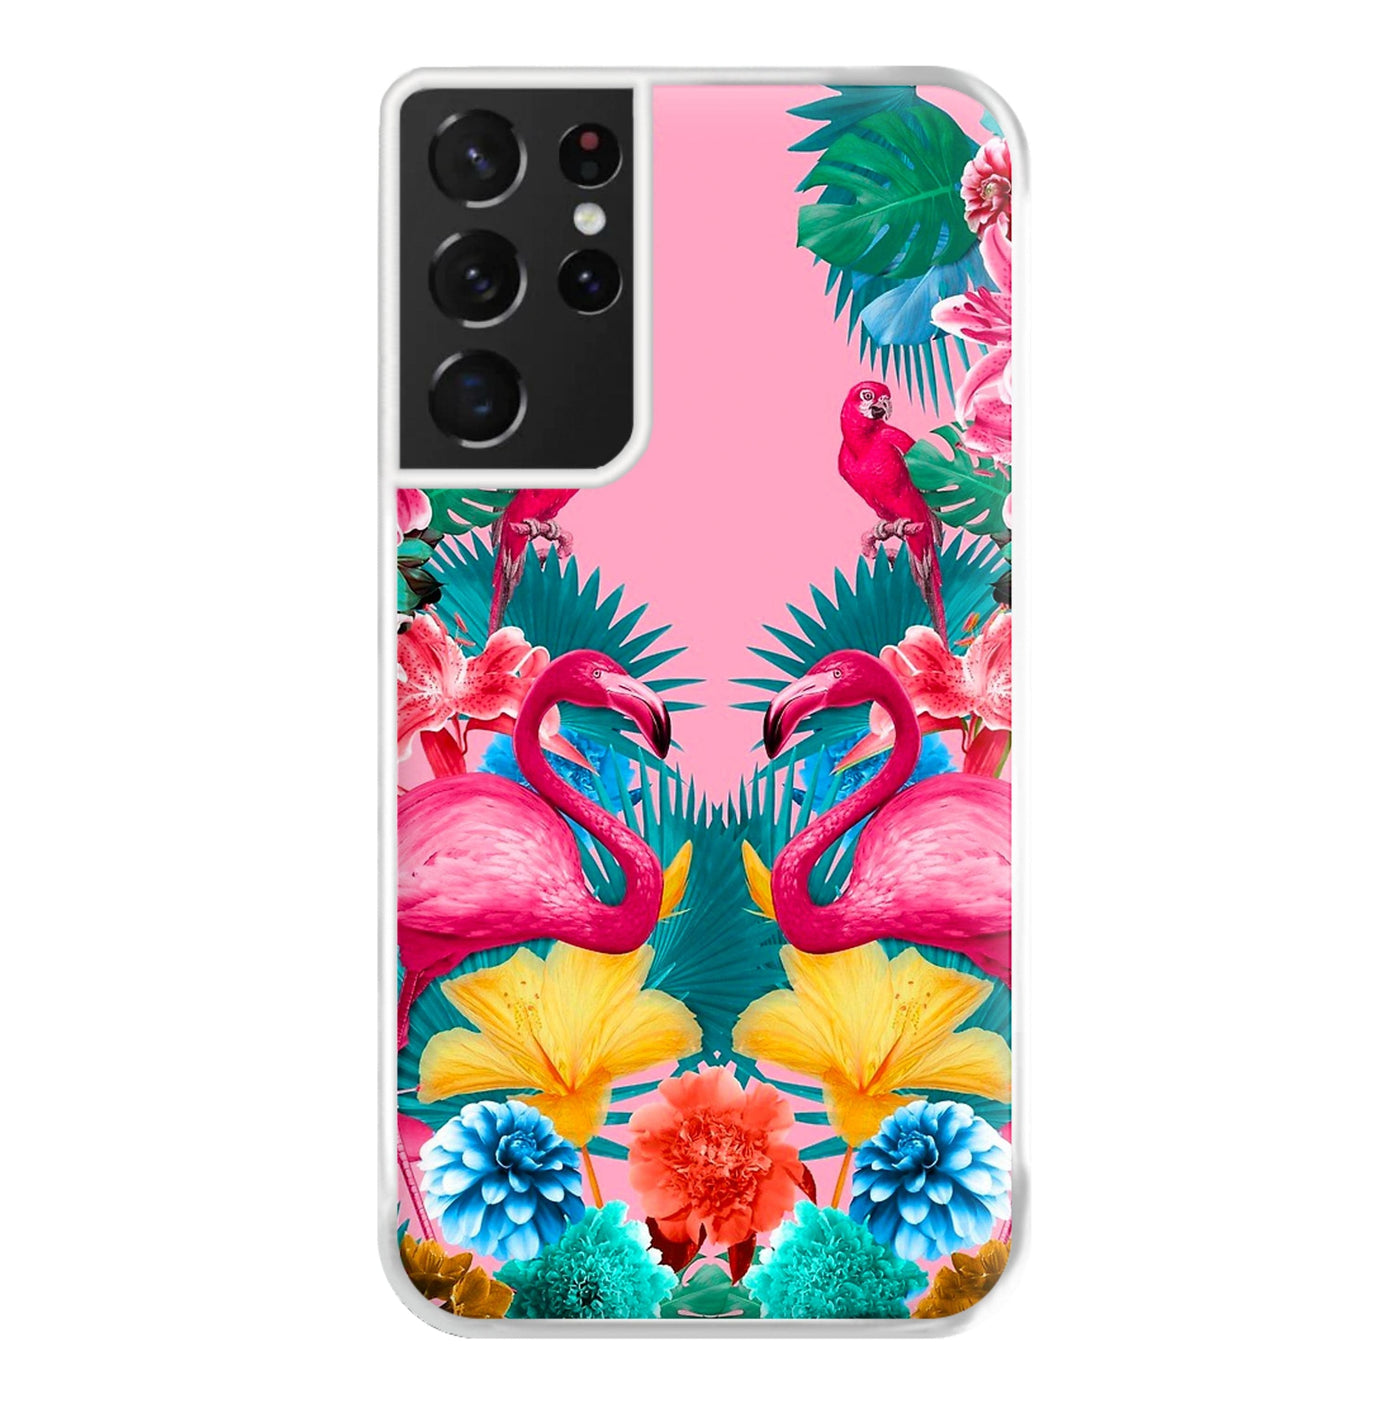 Flamingo and Tropical garden Phone Case